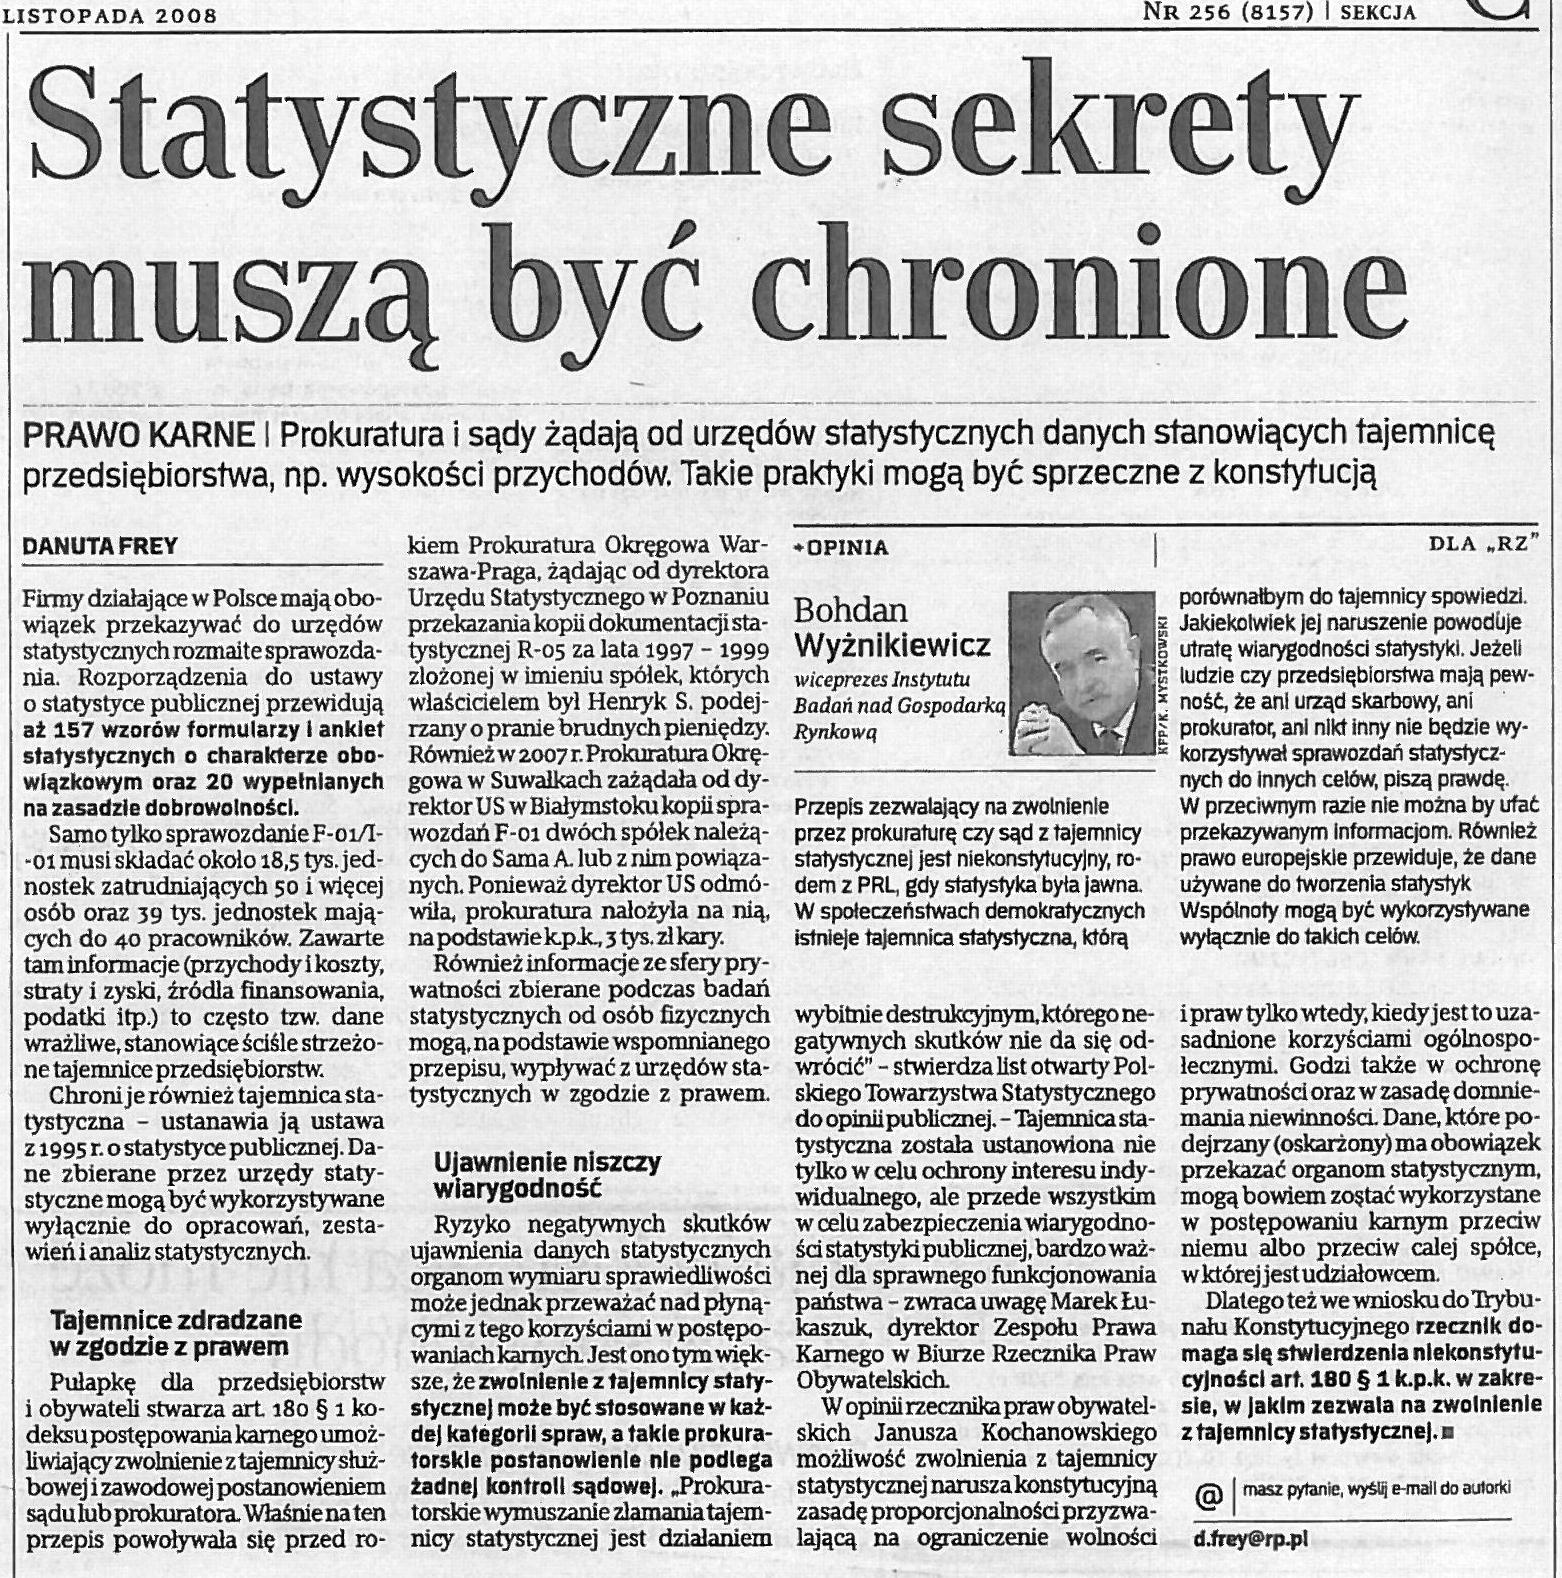 Roczniki Statystyczne Polski 2008